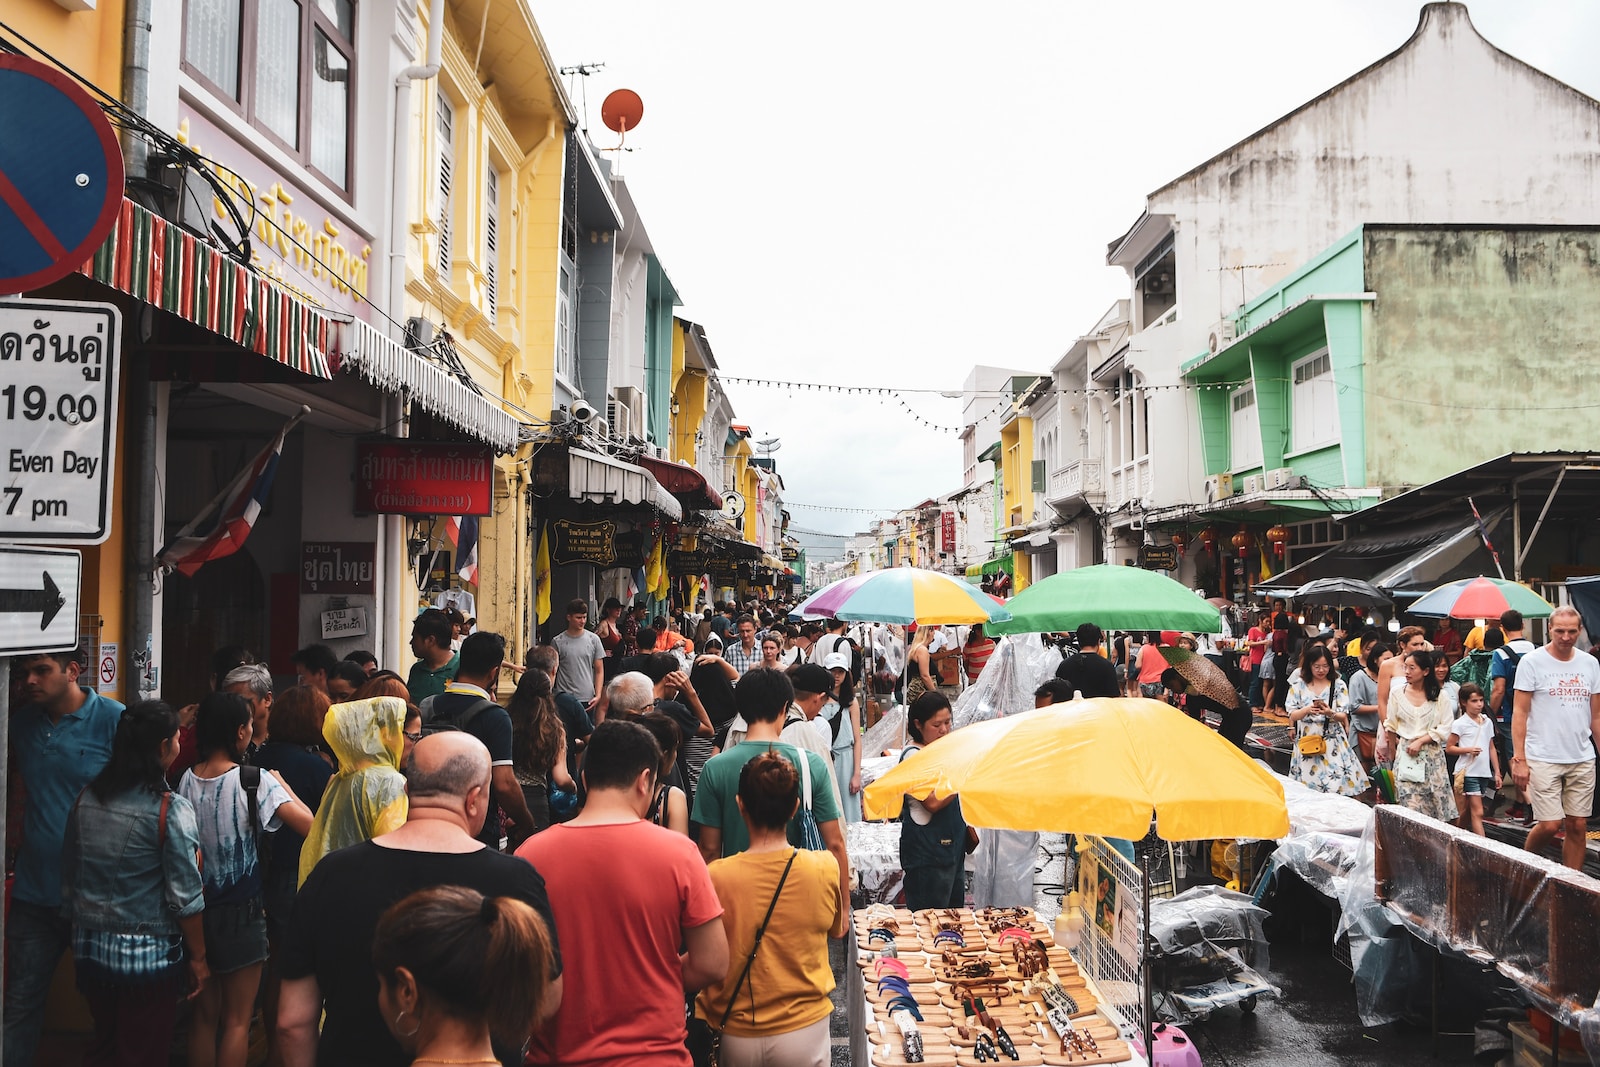 Le marché a lieu tous les dimanches sur Talang Road, l'une des rues les plus anciennes et les plus belles de la ville.